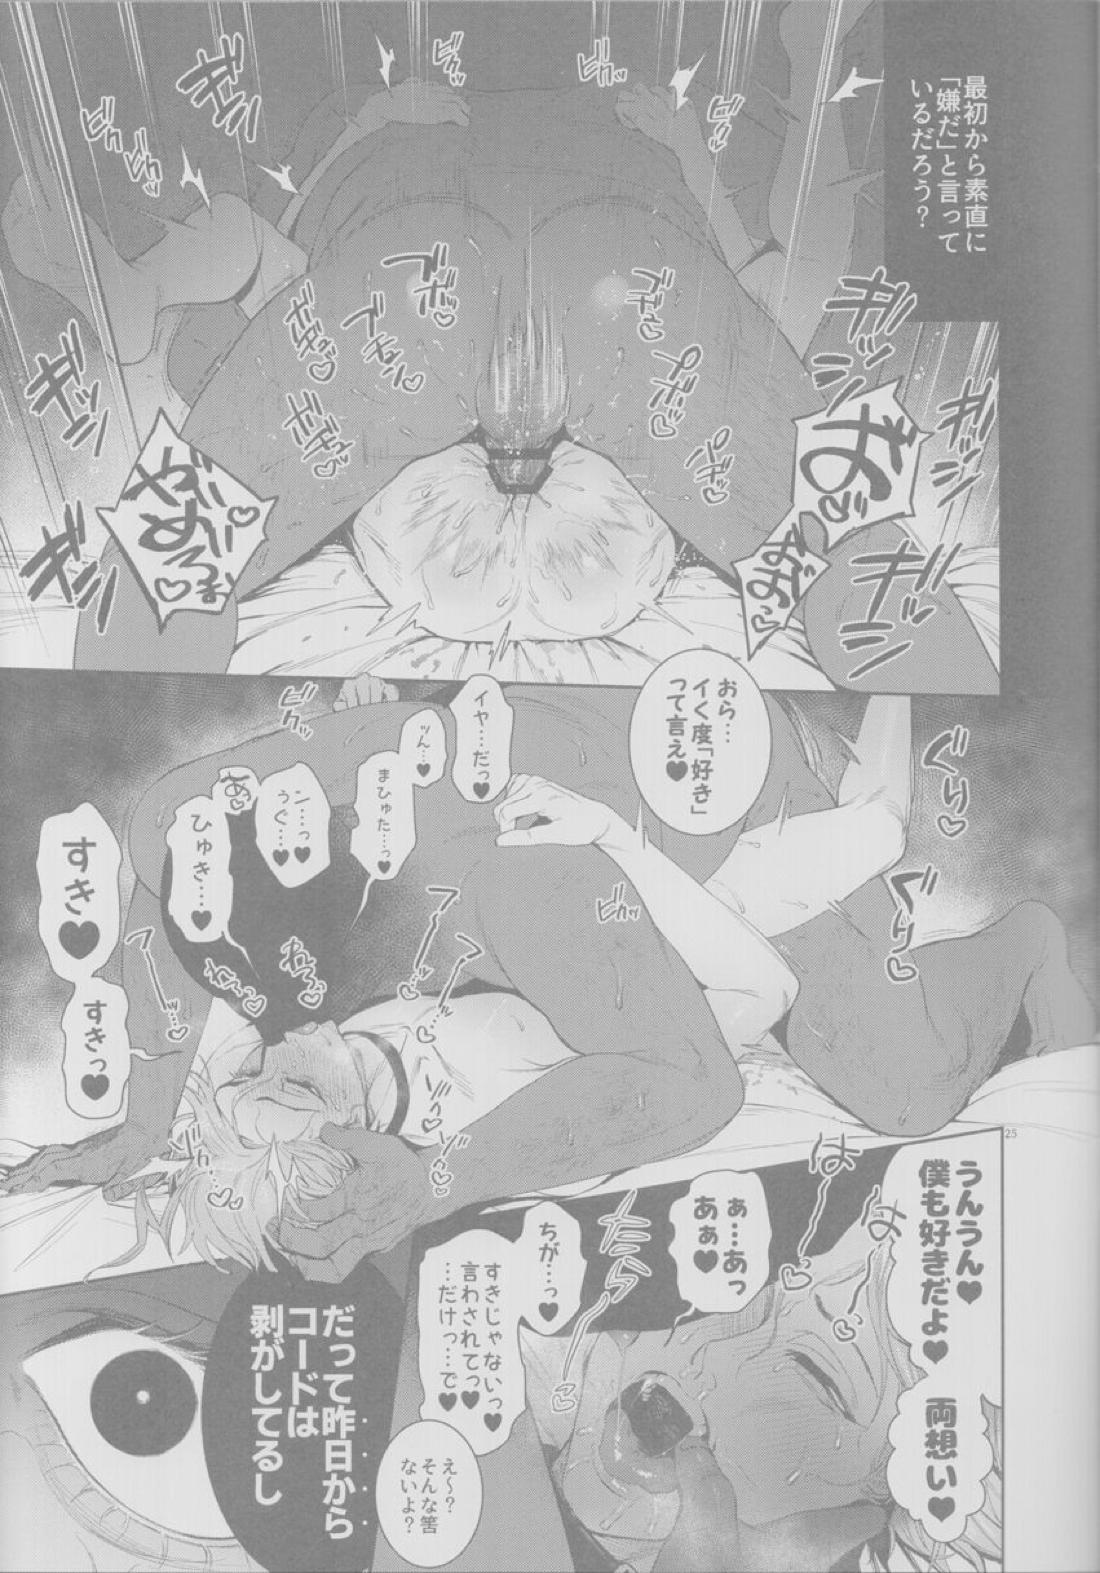 【BL漫画 Fate/Grand Order】悪いことばかりする悪の天才モリアーティがマスターの絶対服従コマンドコードで身体を操られて調教されちゃうドキドキゲイエッチ24